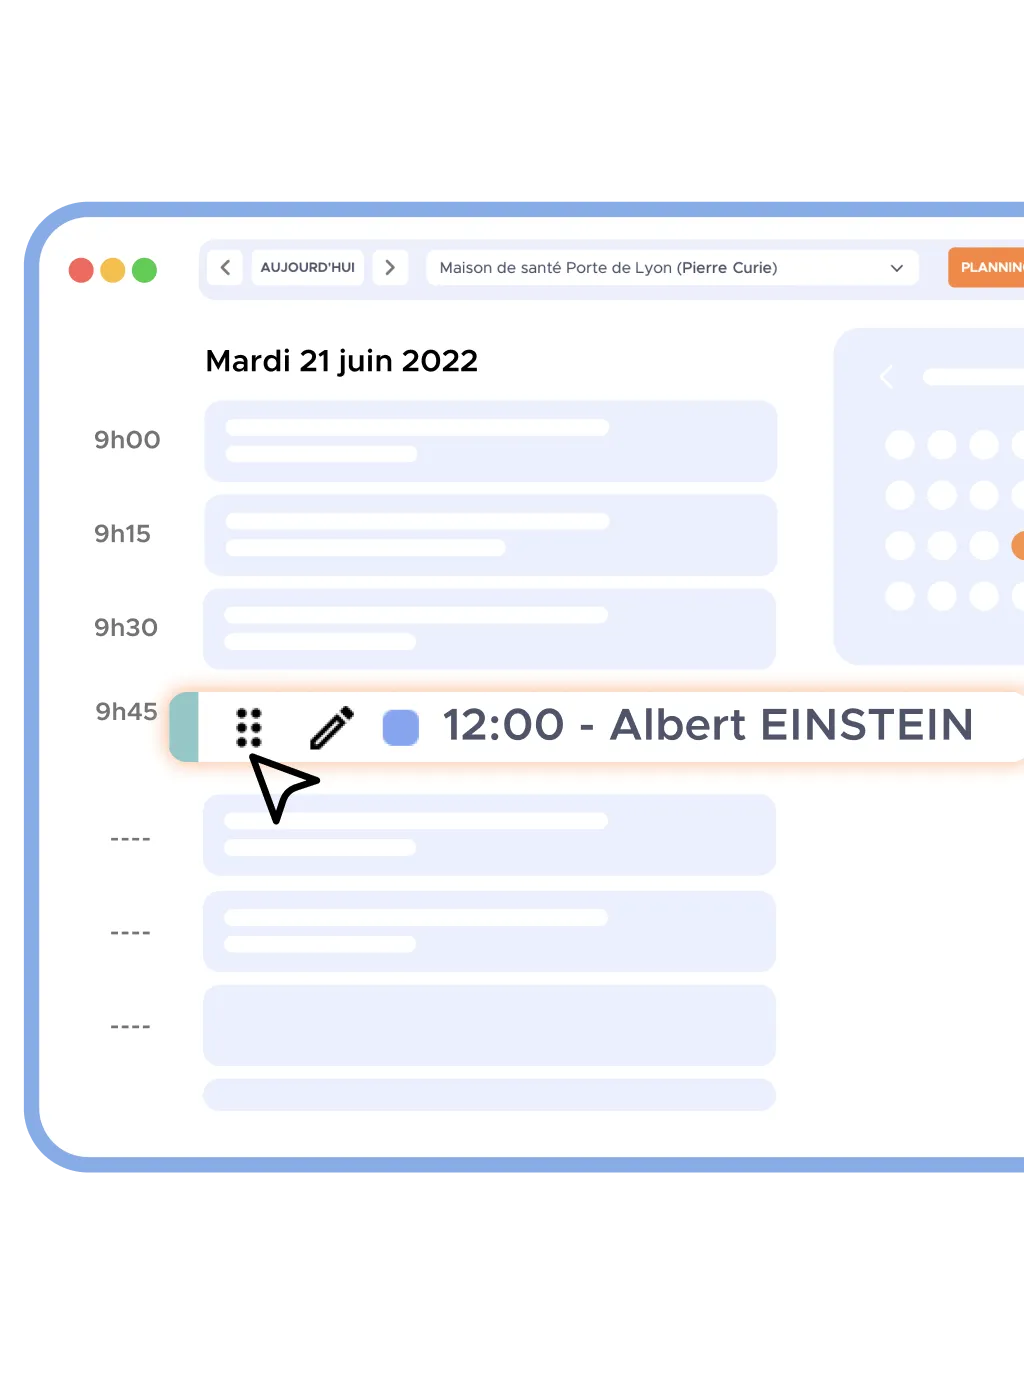 Agenda d'un médecin avec Albert Einstein sélectionné pour midi